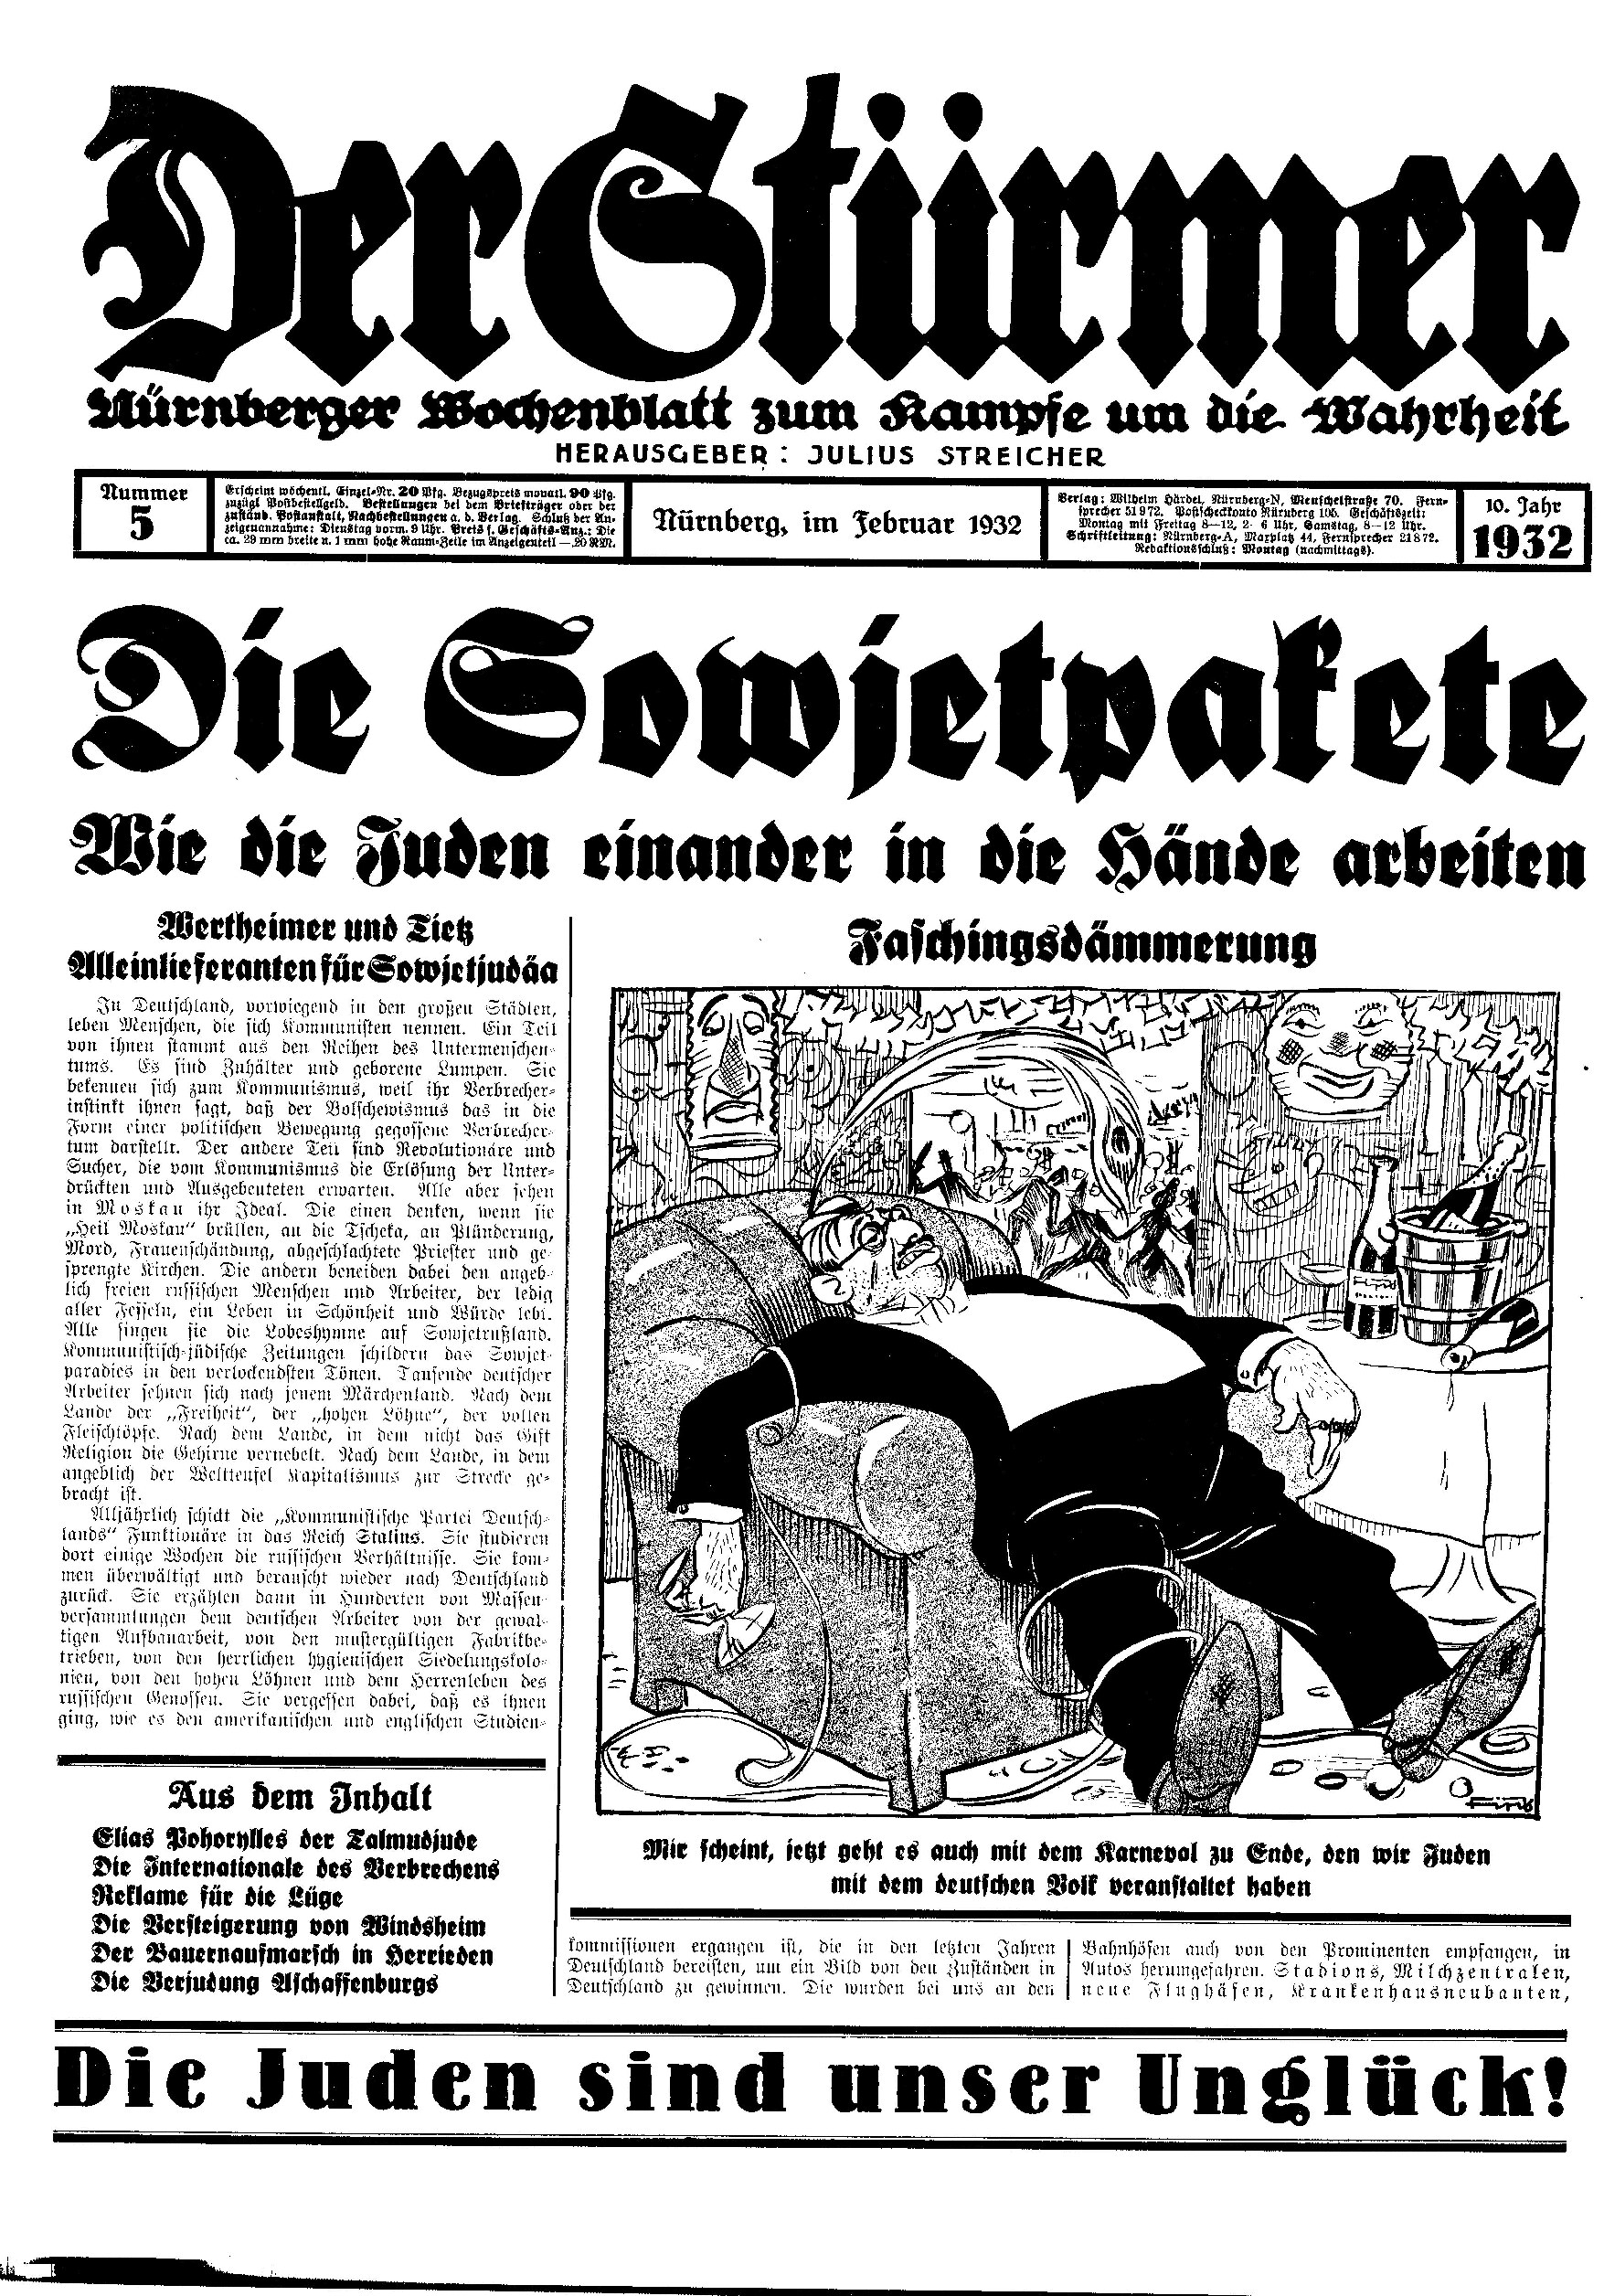 Der Stürmer - 1932 Nr. 05 (8 S., Scan, Fraktur)